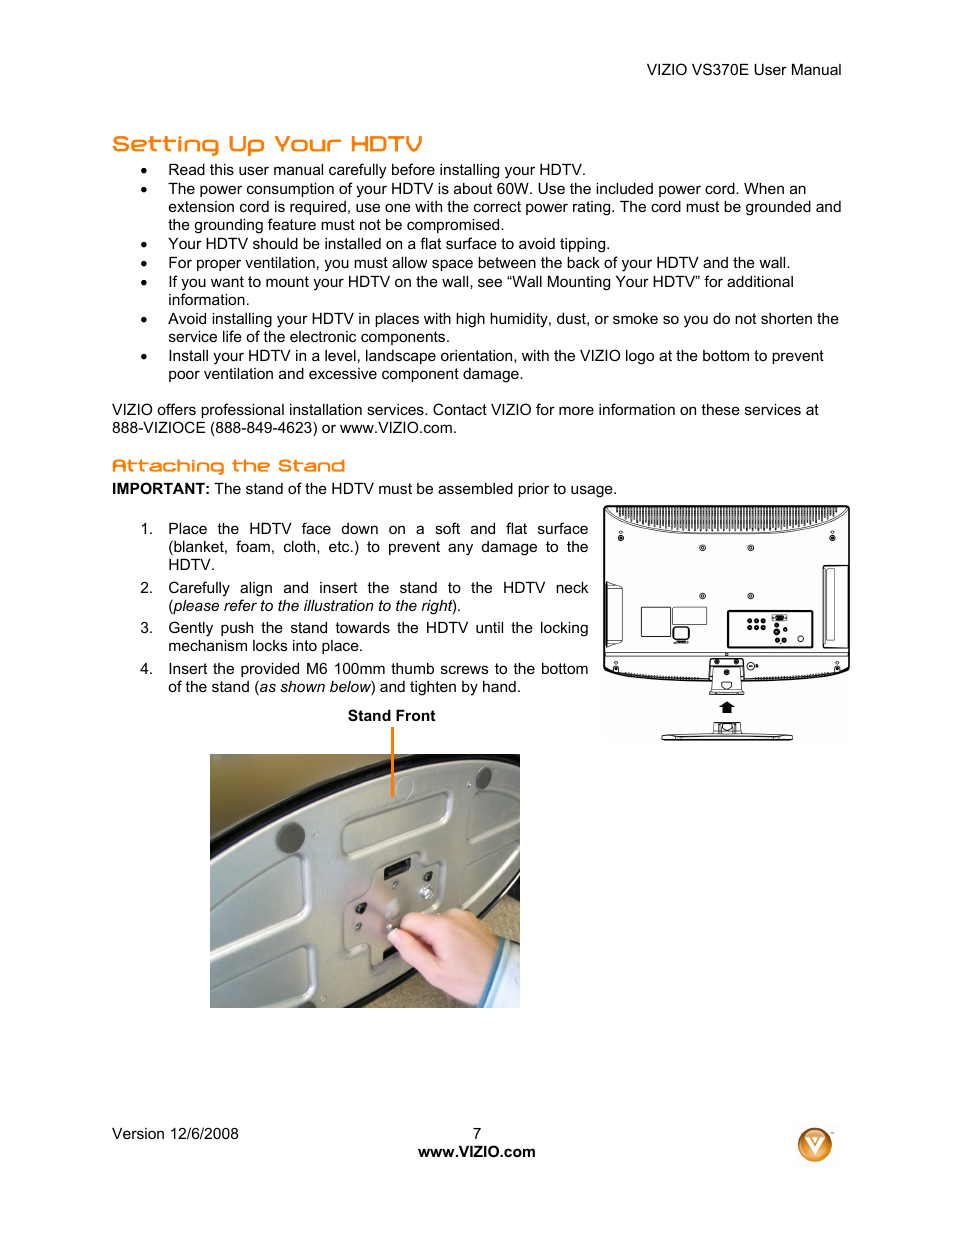 Setting up your hdtv | Vizio VS370E User Manual | Page 7 / 43